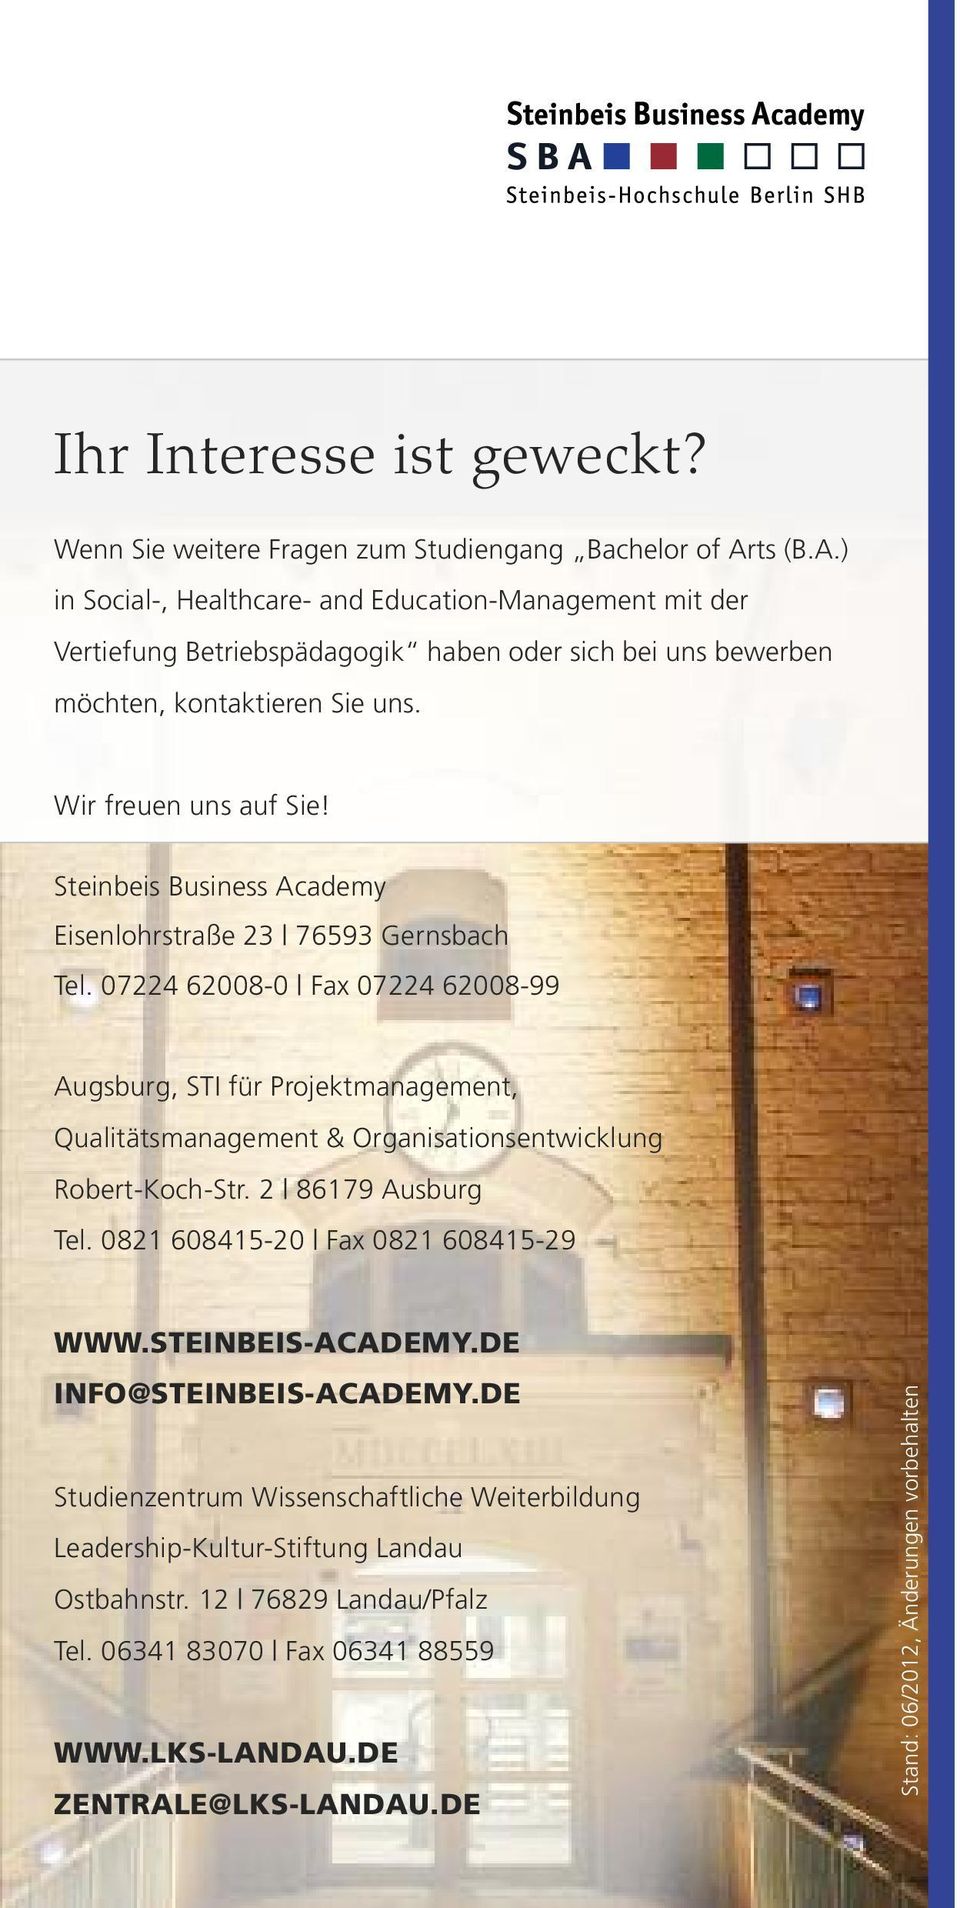 Steinbeis Business Academy Eisenlohrstraße 23 76593 Gernsbach Tel. 07224 62008-0 Fax 07224 62008-99 Augsburg, STI für Projektmanagement, Qualitätsmanagement & Organisationsentwicklung Robert-Koch-Str.